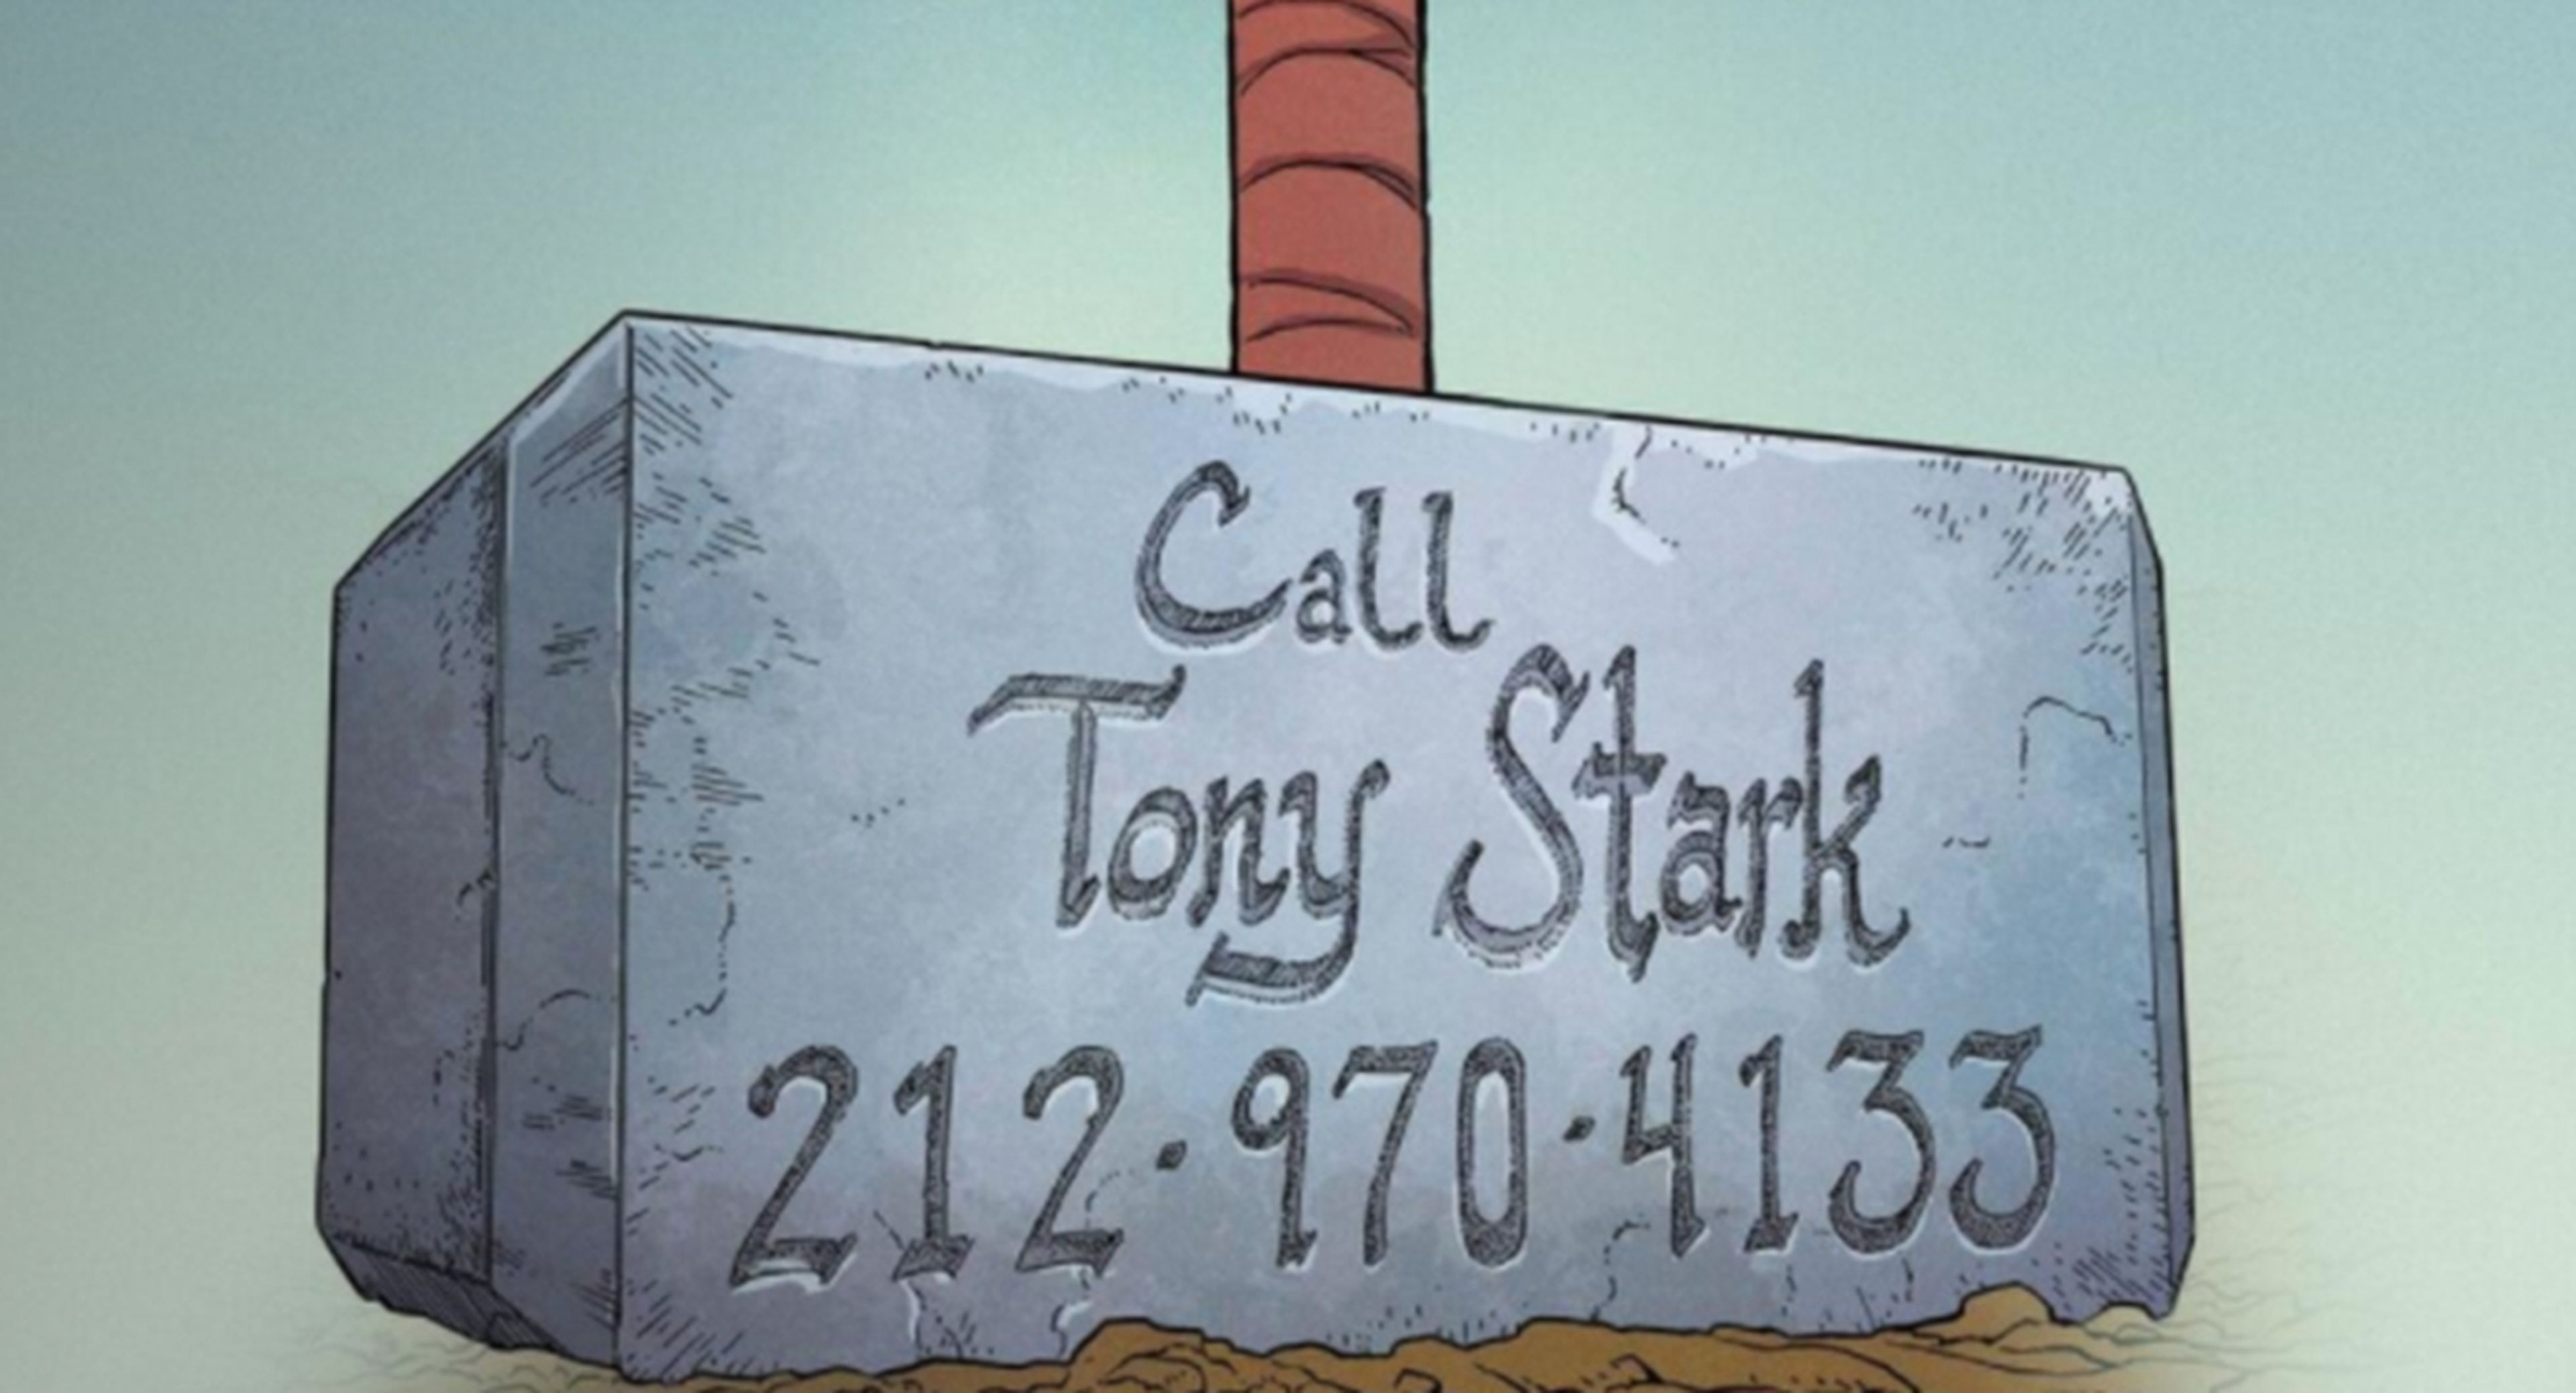 El nuevo cómic de Thor muestra el número de teléfono de Tony Stark grabado en el Mjolnir